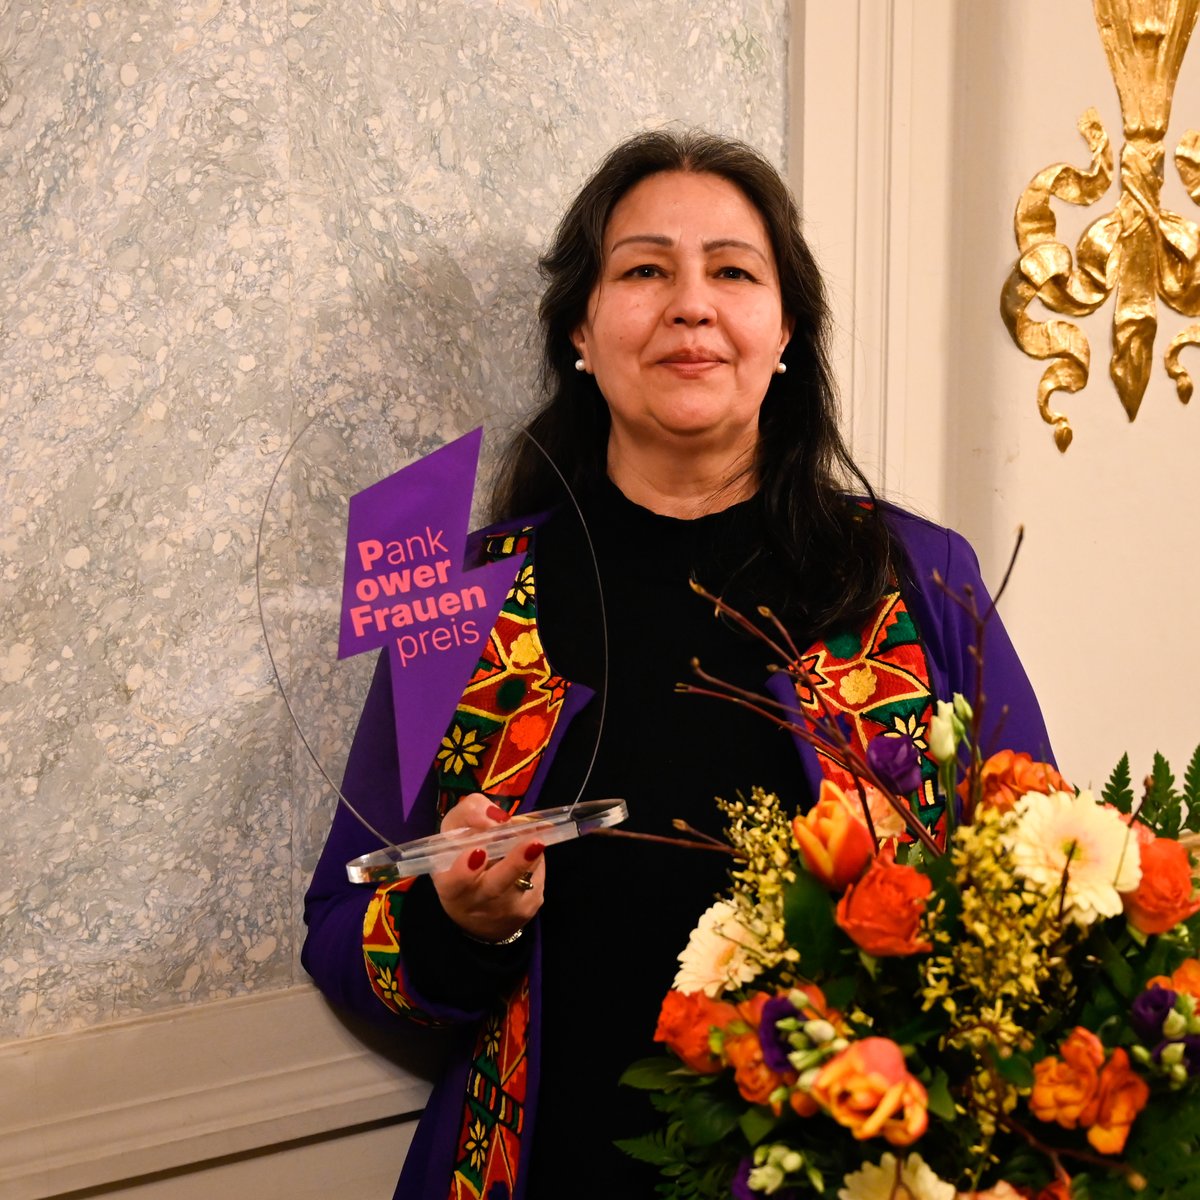 Am 11. März wurde der Pankower Frauenpreis 2024 an Malalai Murr verliehen. Sie wurde u.a. für ihren Einsatz für geflüchtete Frauen, Kinder und Familien in Pankow ausgezeichnet. Wir gratulieren herzlich! Mehr Infos: berlin.de/ba-pankow/aktu…